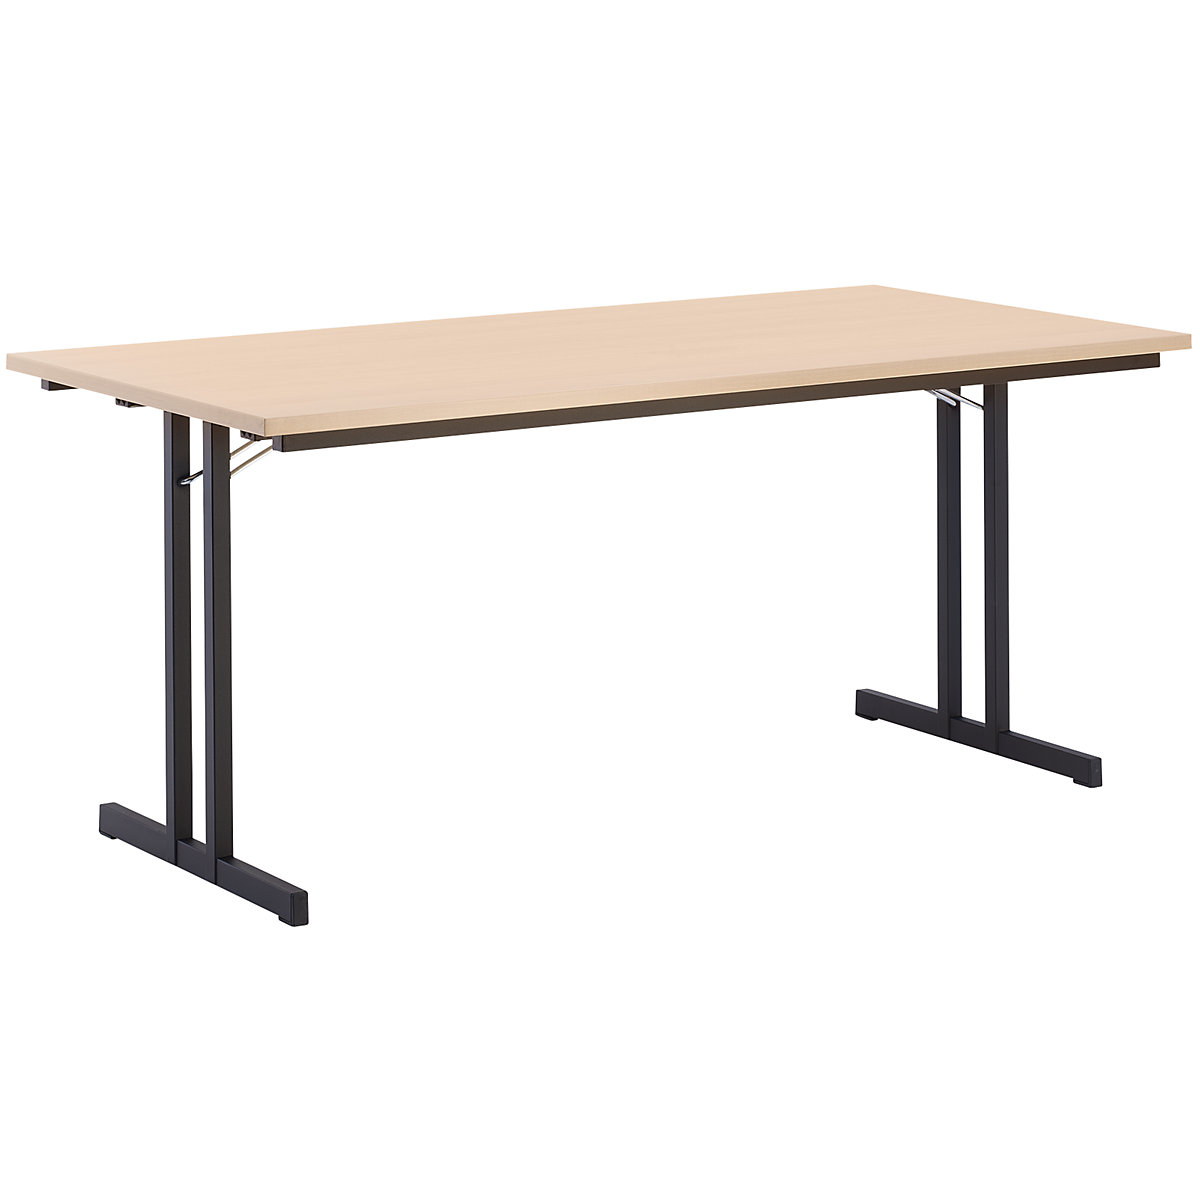 Sklopný stůl, s mimořádně silnou deskou, výška 720 mm, 1600 x 700 mm, podstavec černý, deska bukový dekor